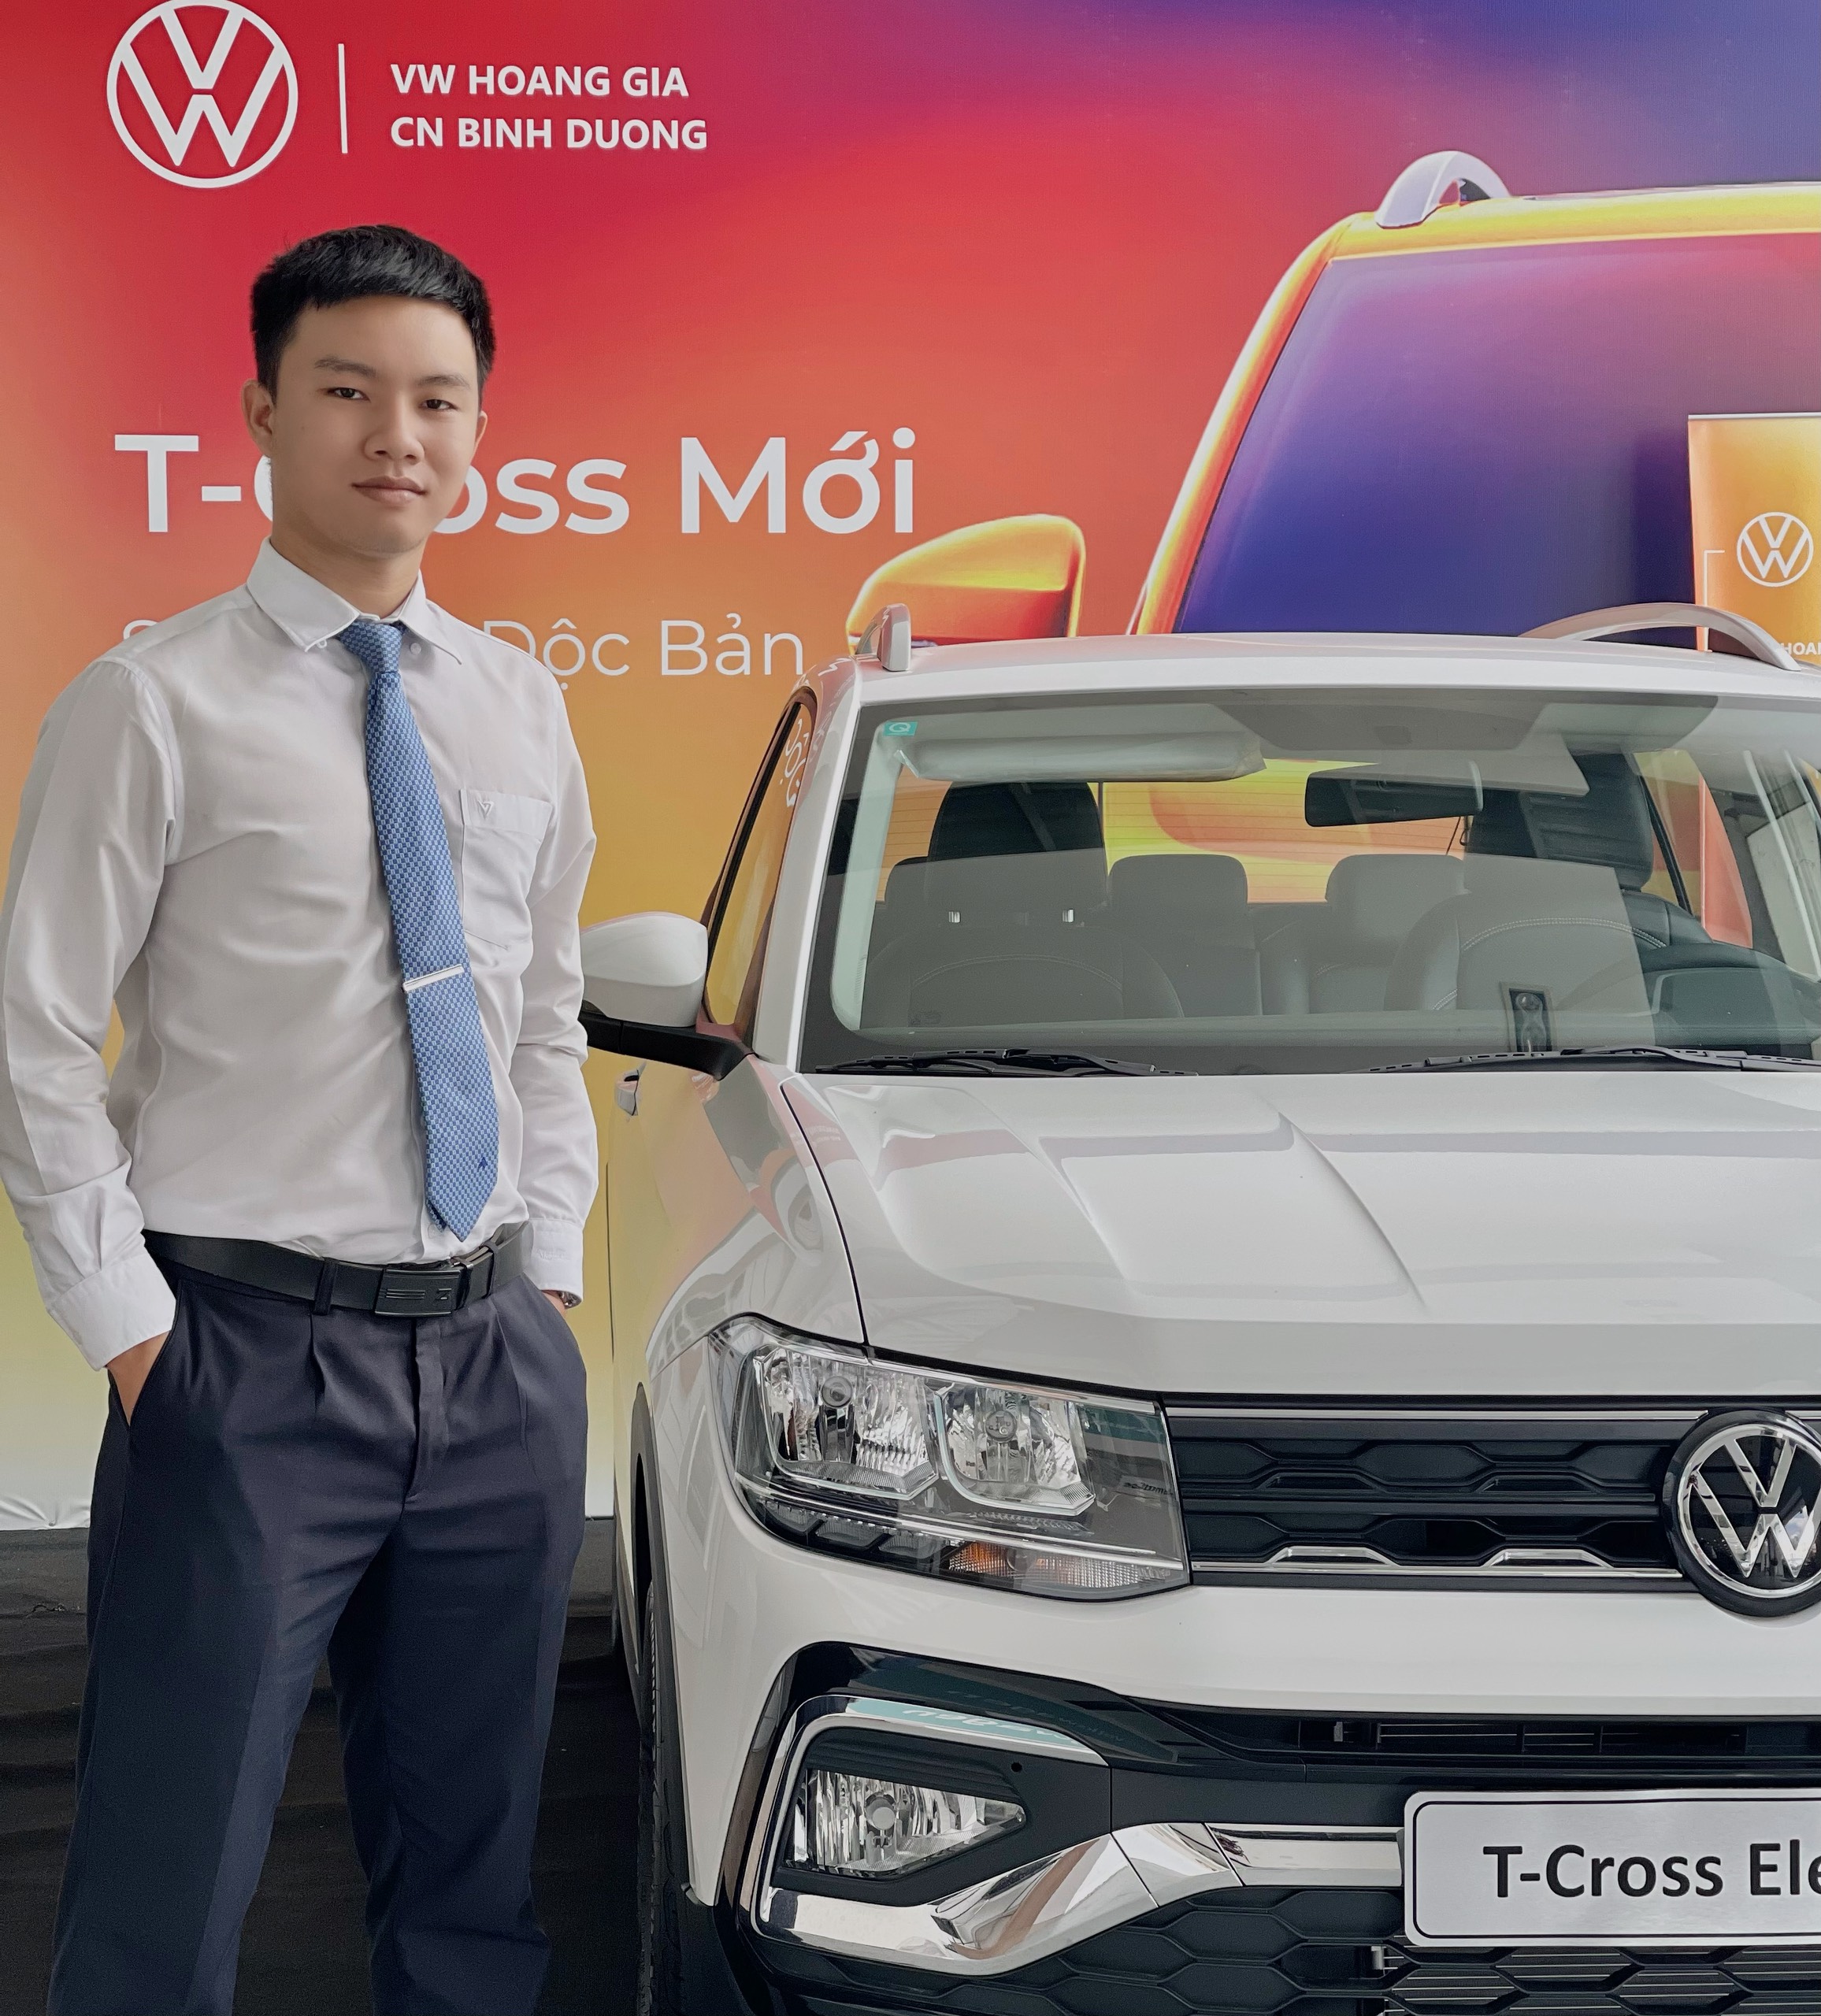 Mr Duy Volkswagen Hoàng Gia - CN Bình Dương